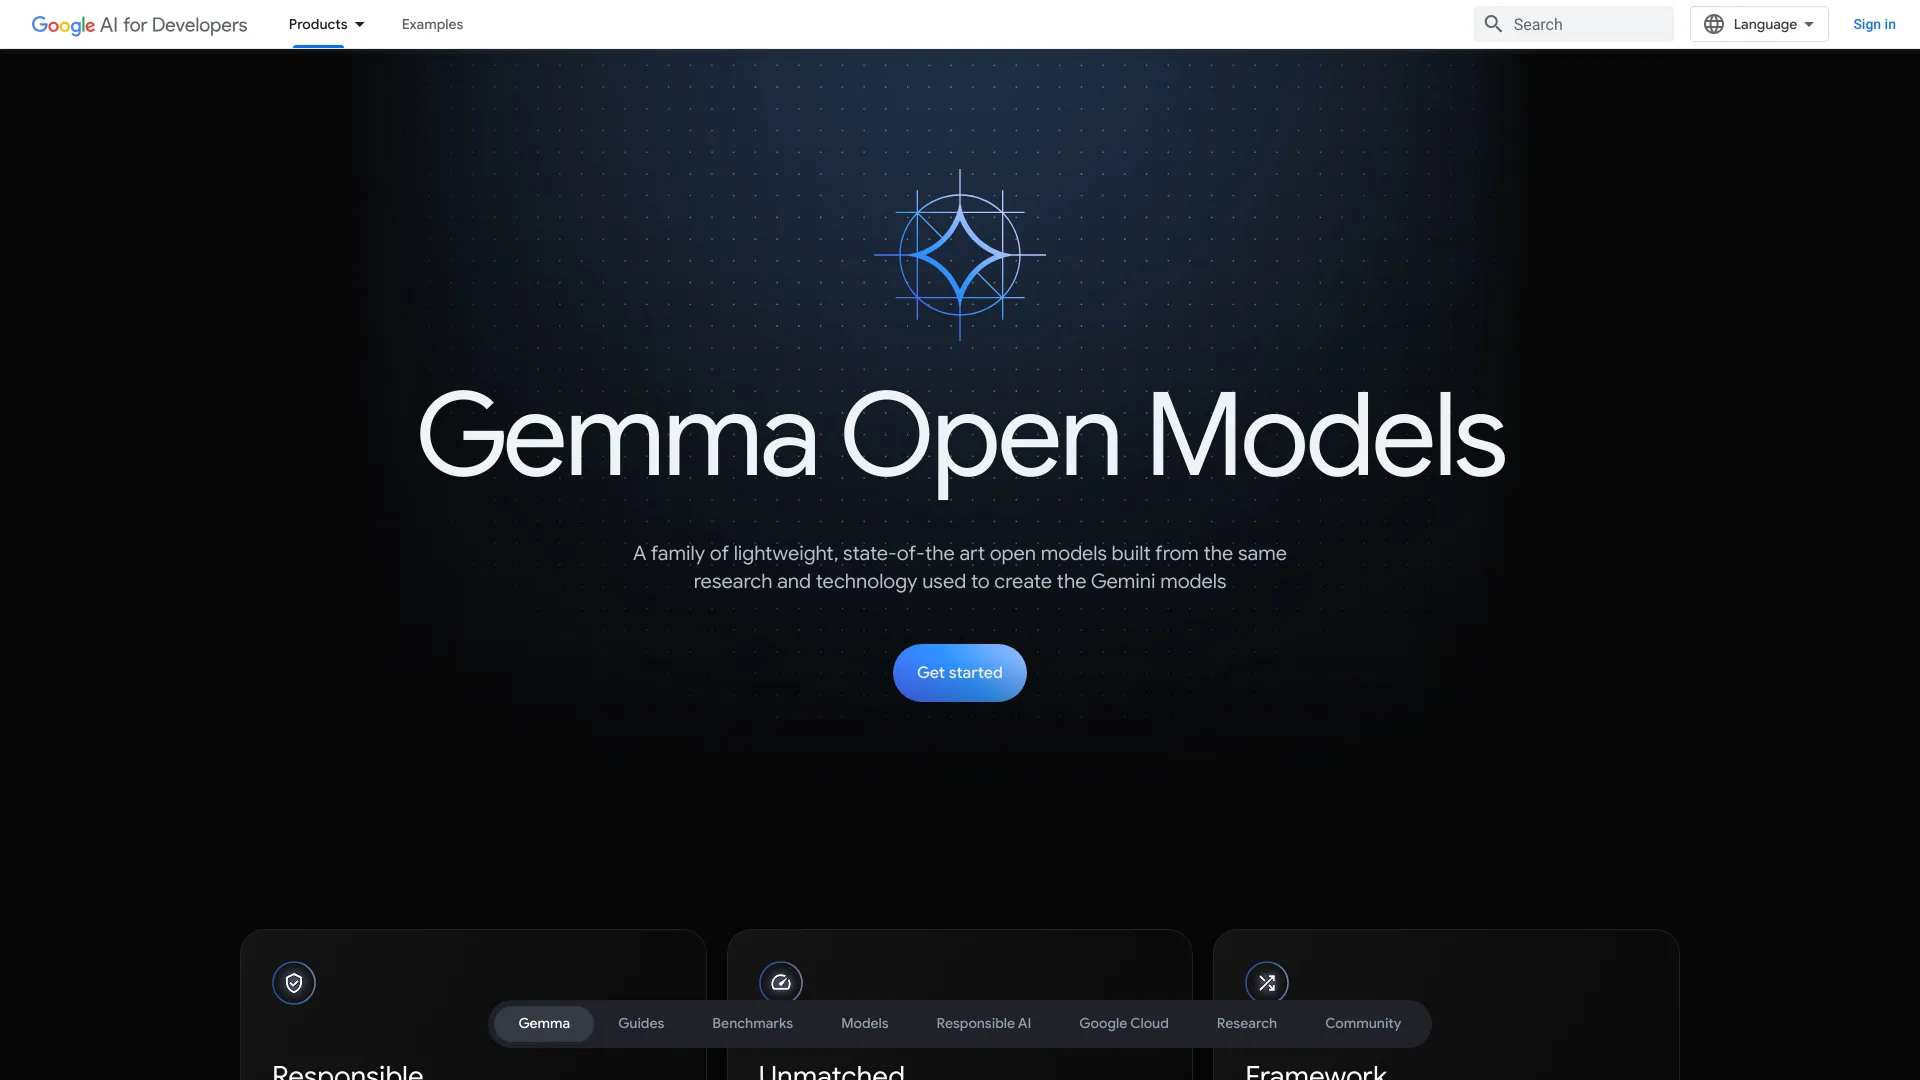 Gemma Open Models by Google